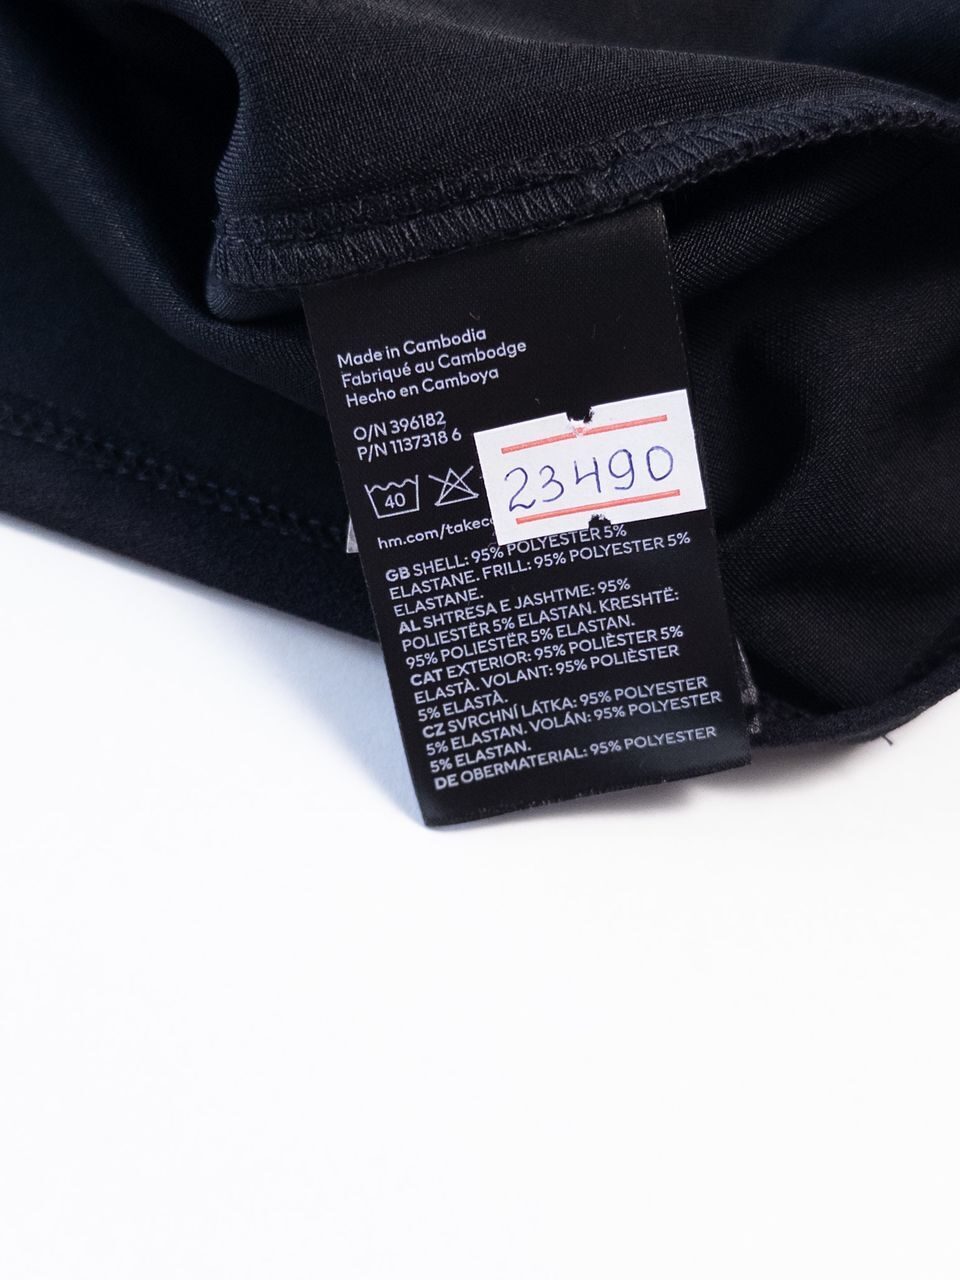 Приталенный топ из трикотажа с широкой оборкой вокруг горловины на одно плечо цвет черный/сливочный размер EUR XL (rus 52) H&M